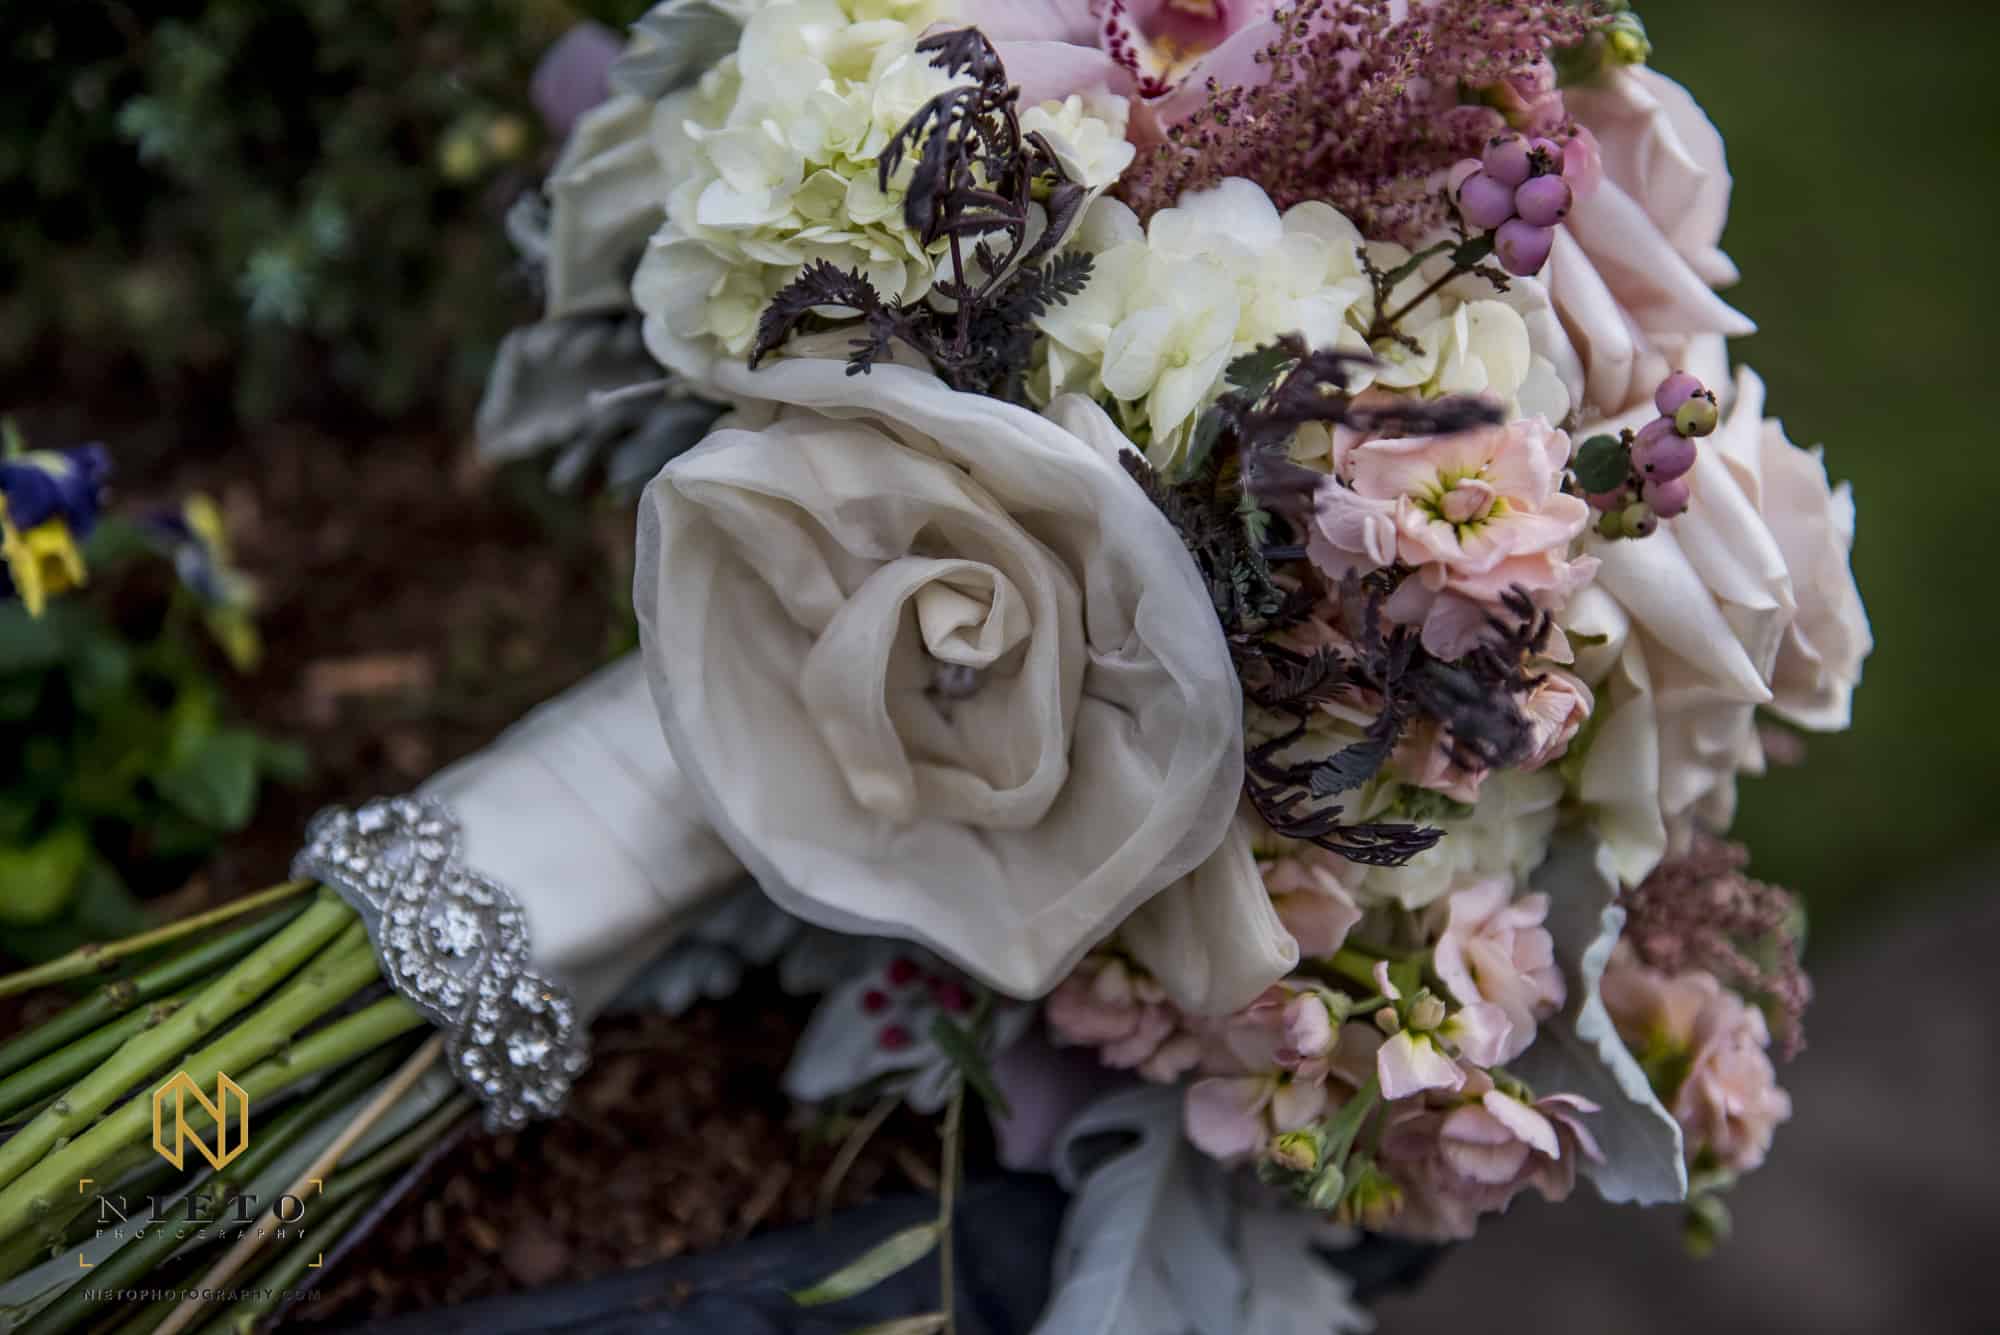 Raleigh Area Wedding Vendors Create Gatsby Garden Party Wedding